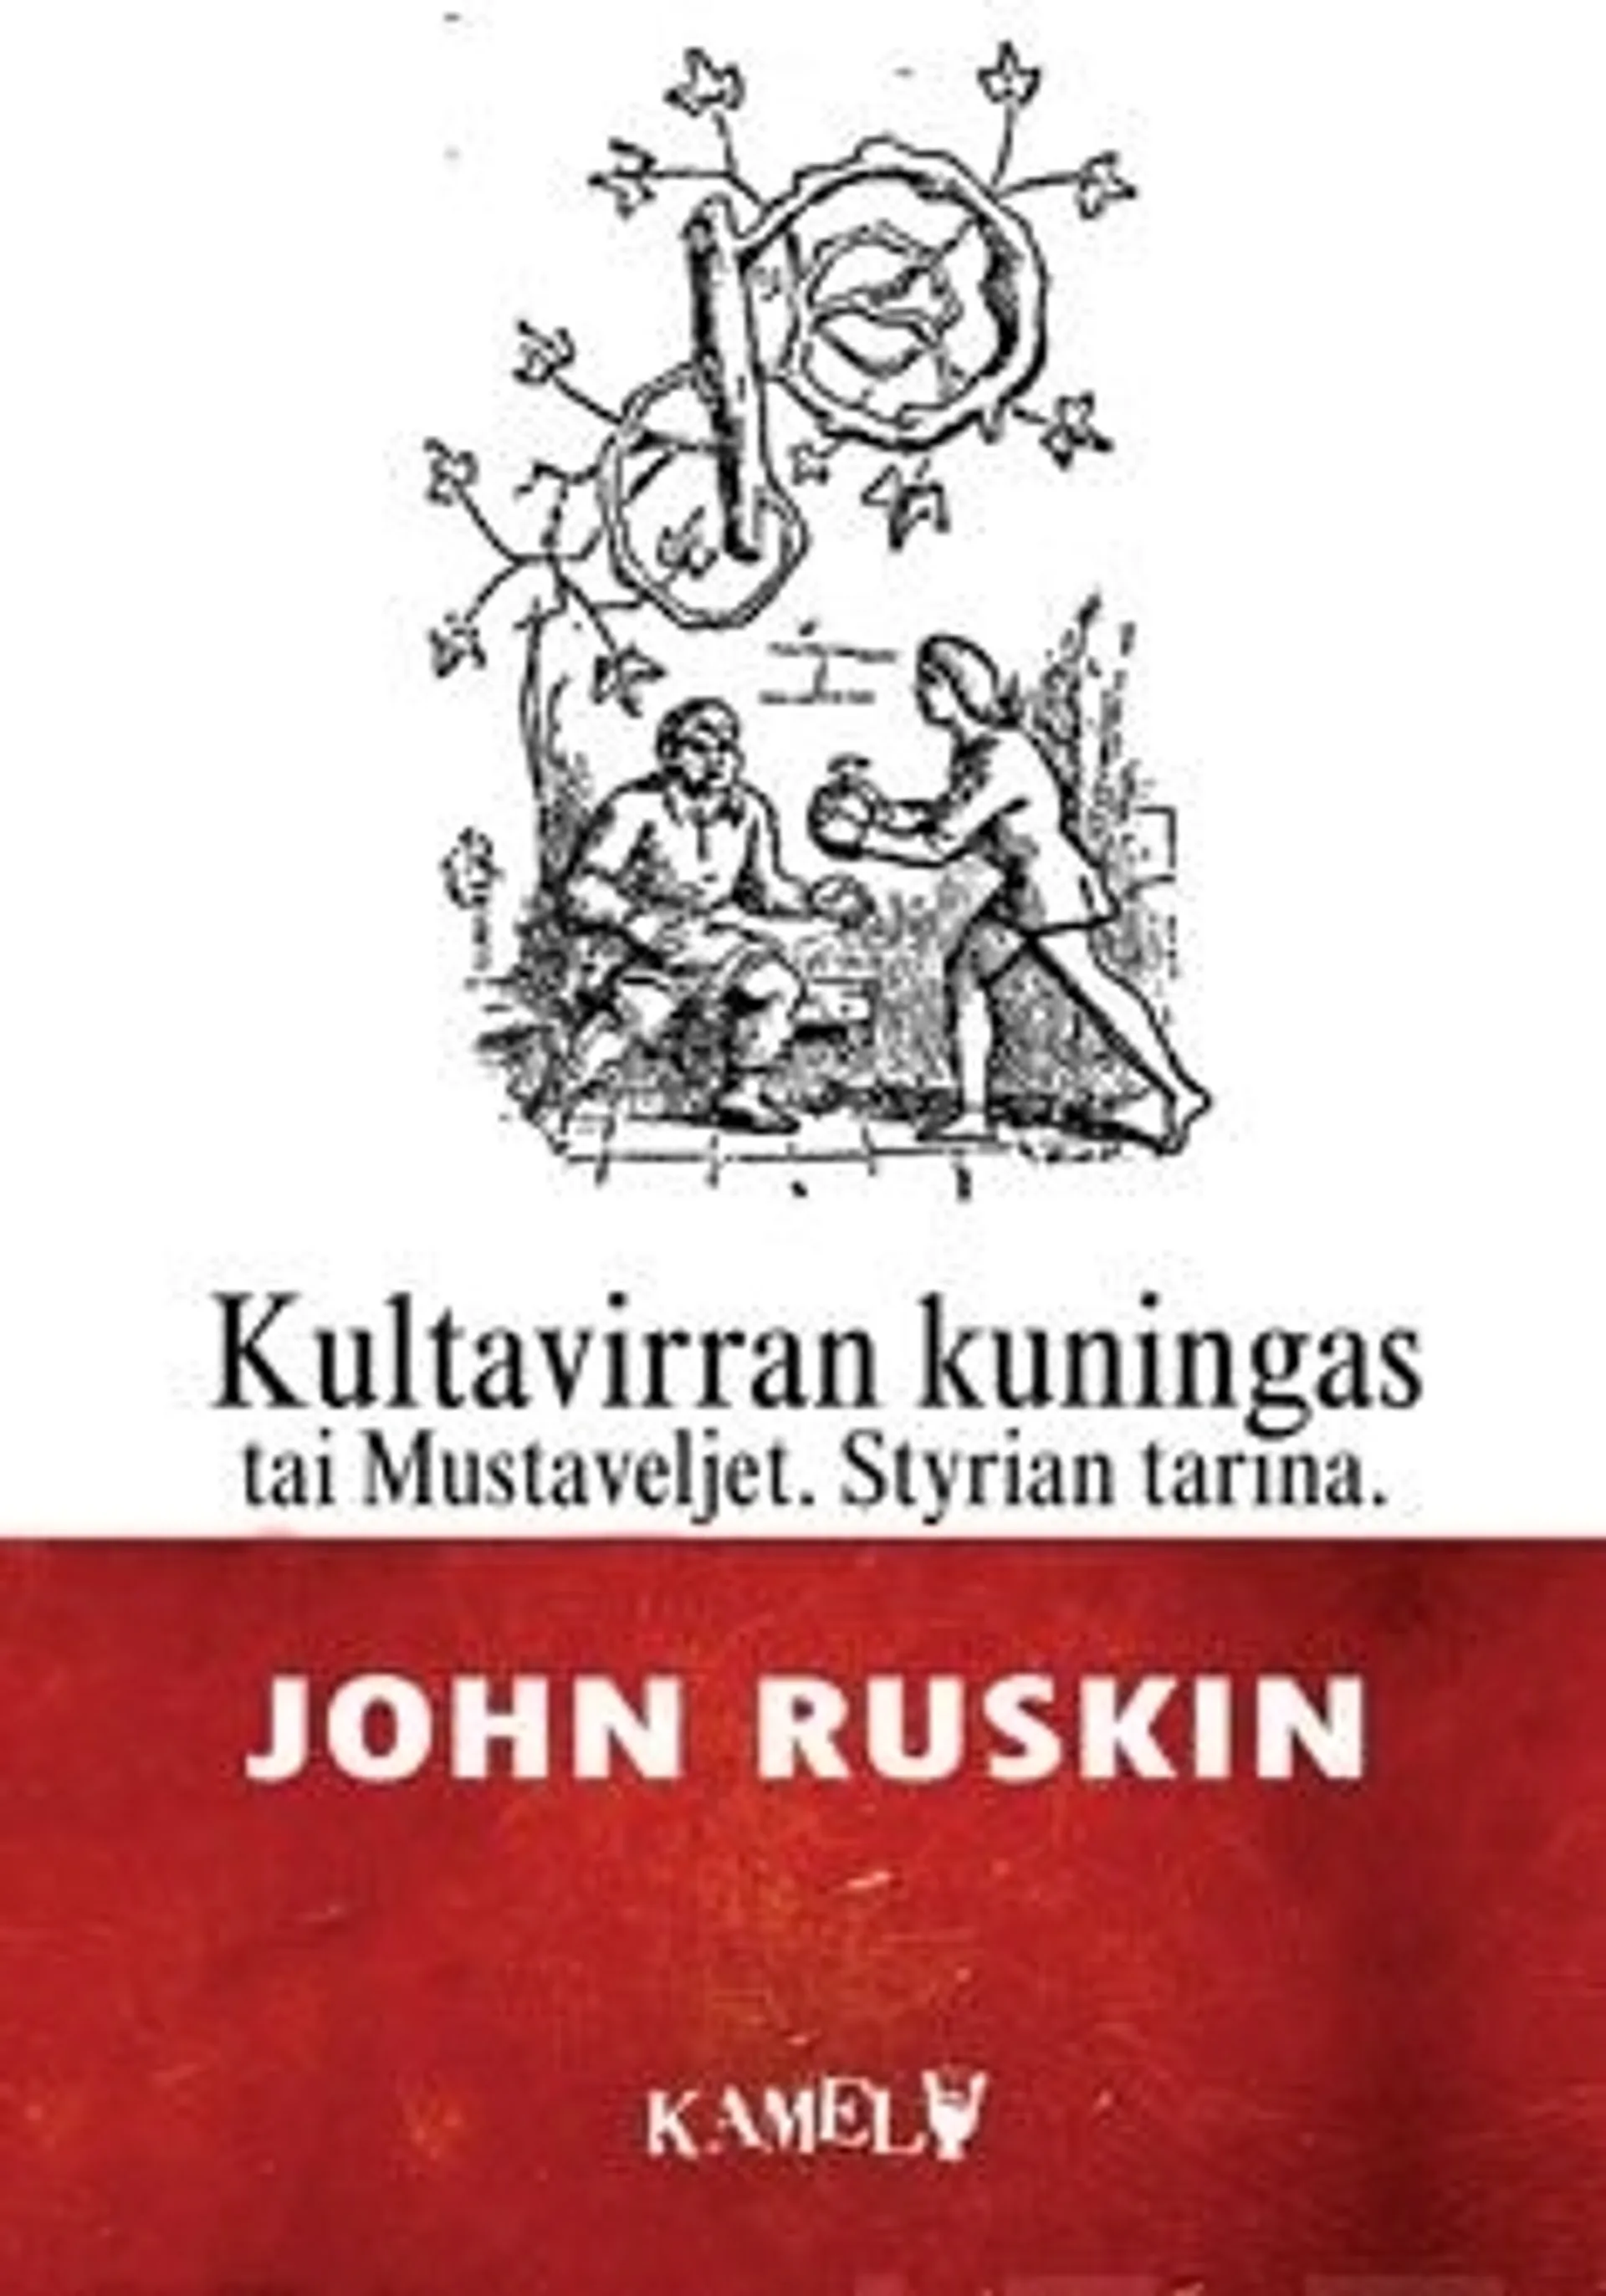 Ruskin, Kultavirran kuningas tai Mustaveljet - Styrian tarina